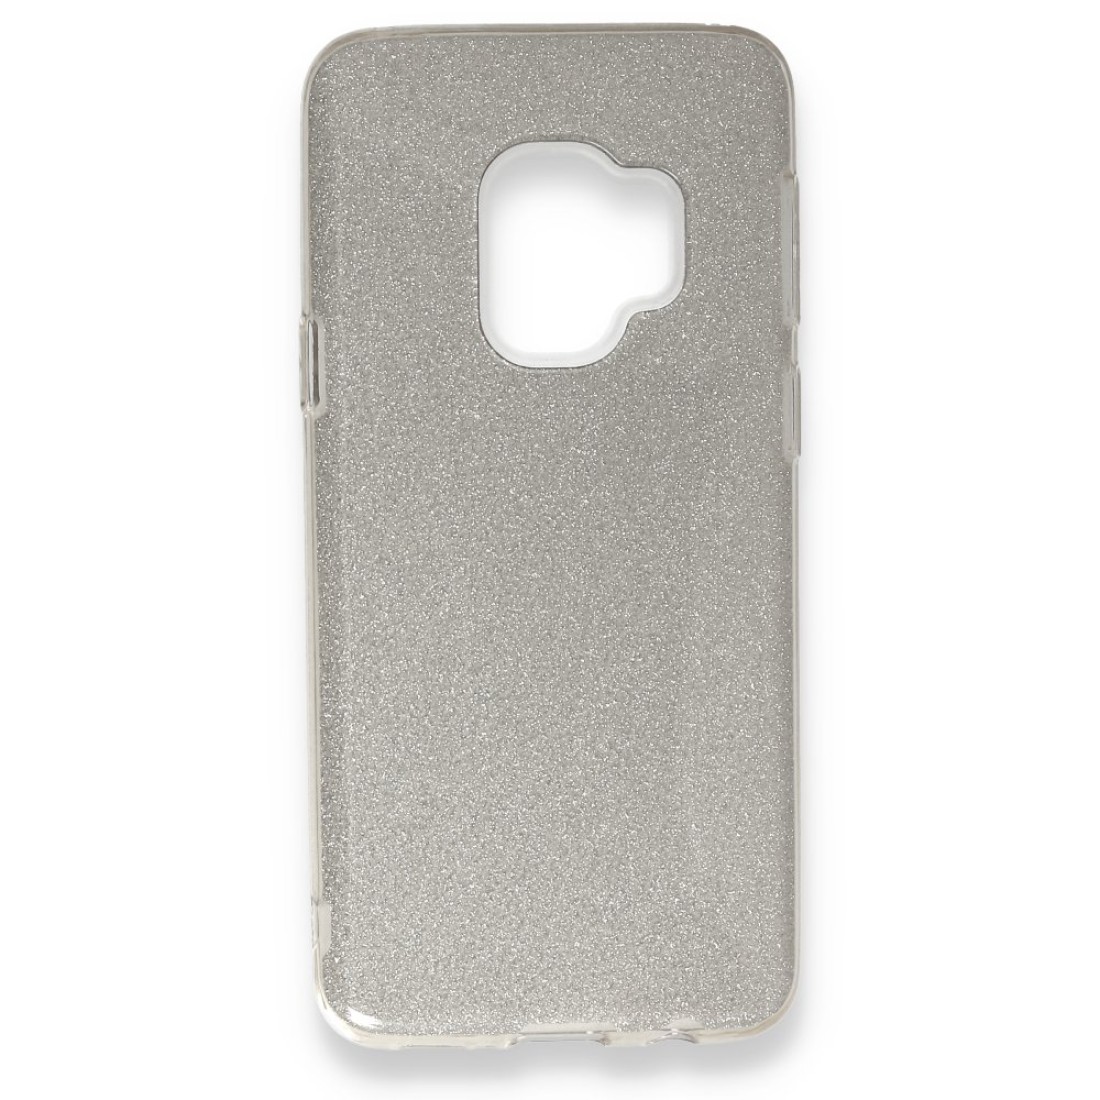 Samsung Galaxy S9 Kılıf Simli Katmanlı Silikon - Gümüş